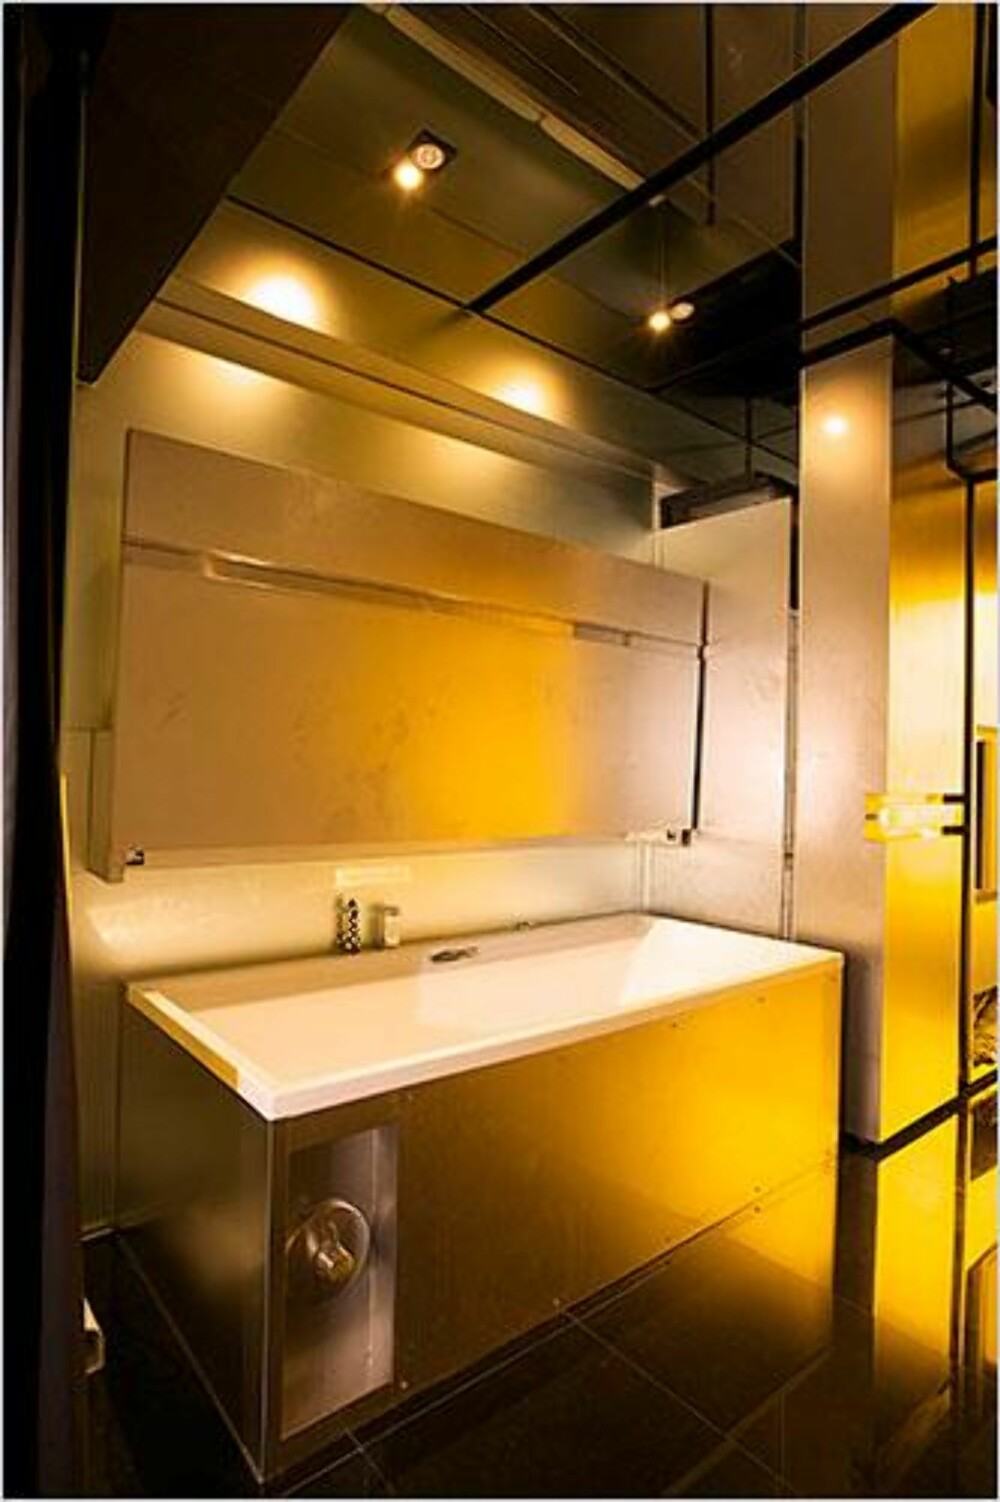 SUPERSIZE: Arkitekten har fått plass til et ekstra stort badekar i sin minimale leilighet. FOTO: Marcel Lam/Homedsgn.com